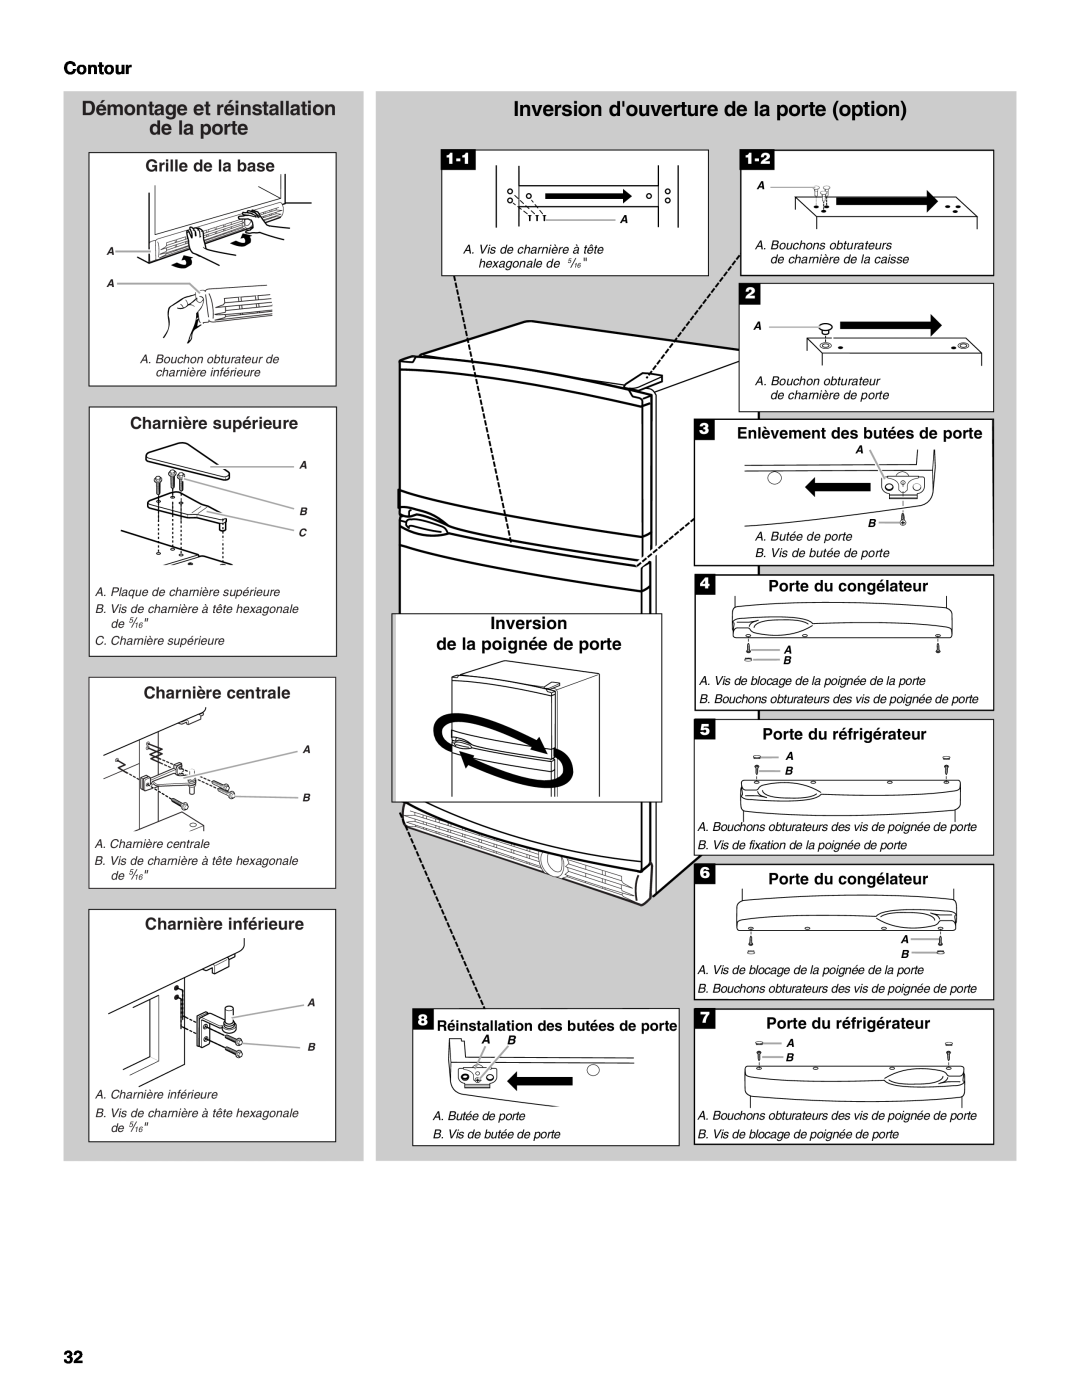 KitchenAid TOP-MOUNT REFRIGERATOR manual Inversion douverture de la porte option, Inversion de la poignée de porte, Contour 